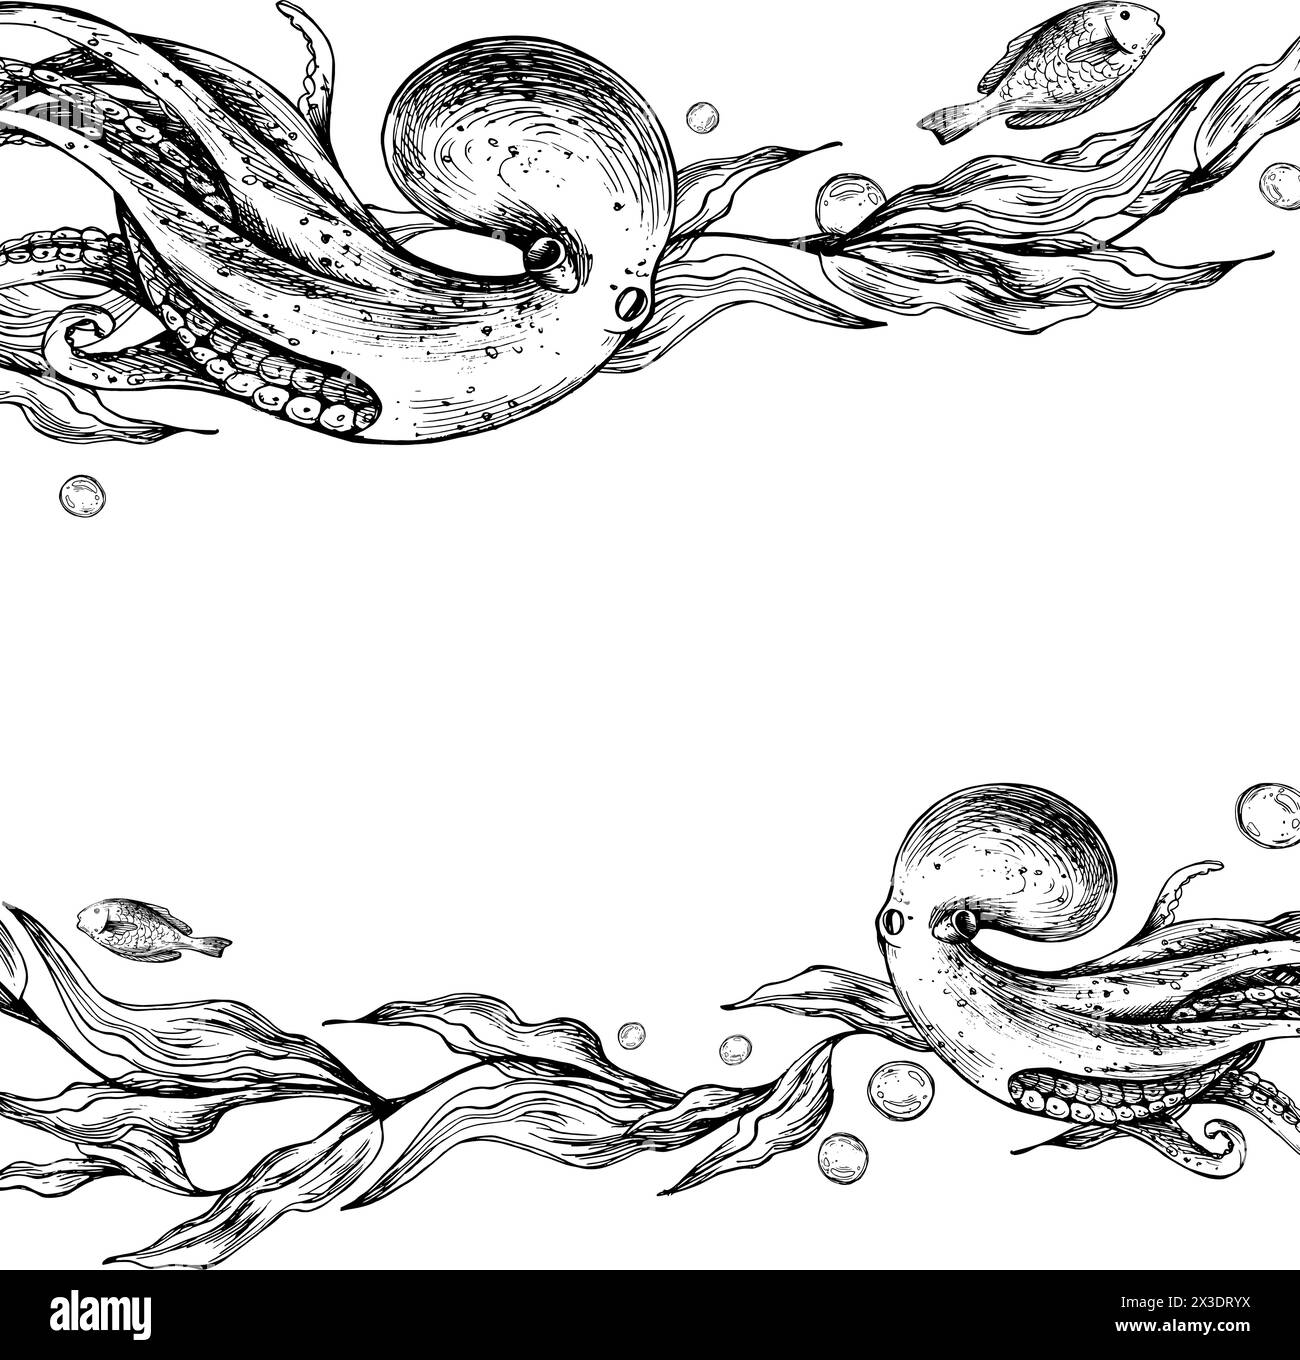 Unterwasserwelt Clipart mit Meerestieren, Kraken, Fischen, Blasen und Algen. Grafische Abbildung, handgezeichnet mit schwarzer Tinte. Vorlage, Rahmen-EPS-Vektor Stock Vektor